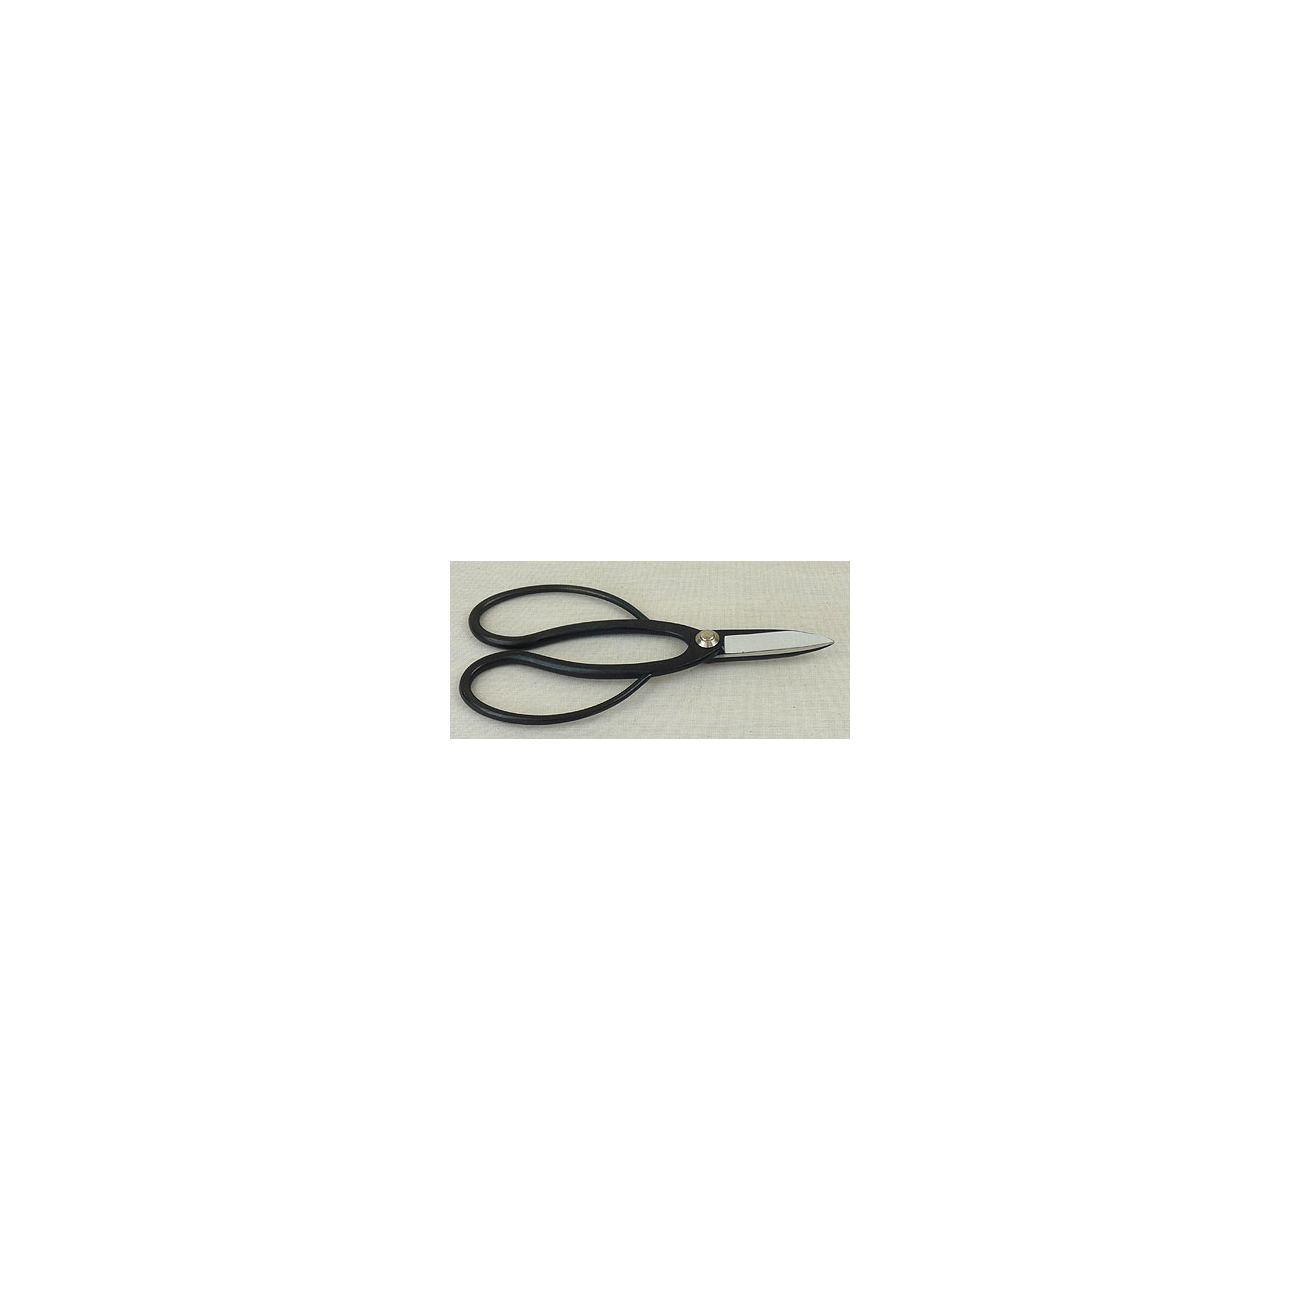 Japanese large hoop root scissors K16002  180 mm